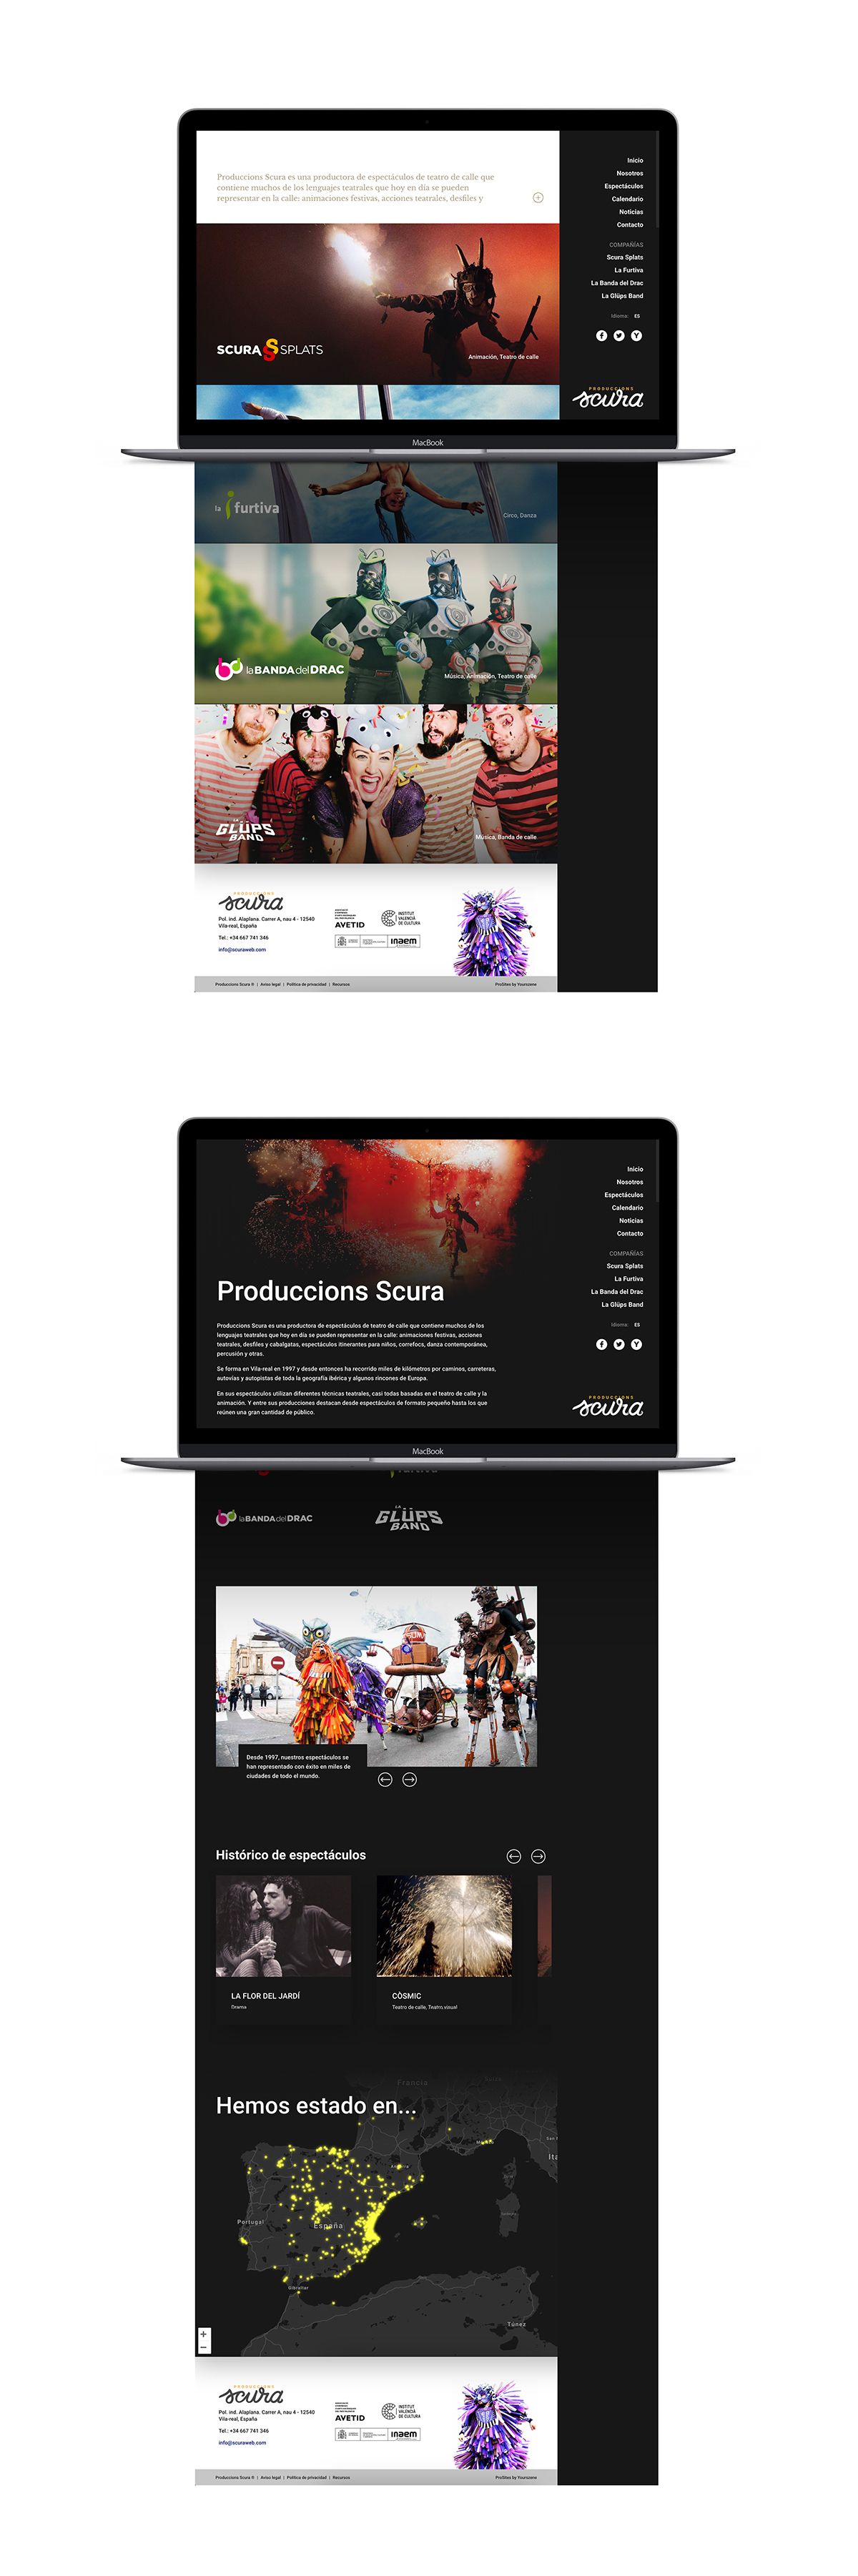 Diseño del sitio web de Produccions Scura